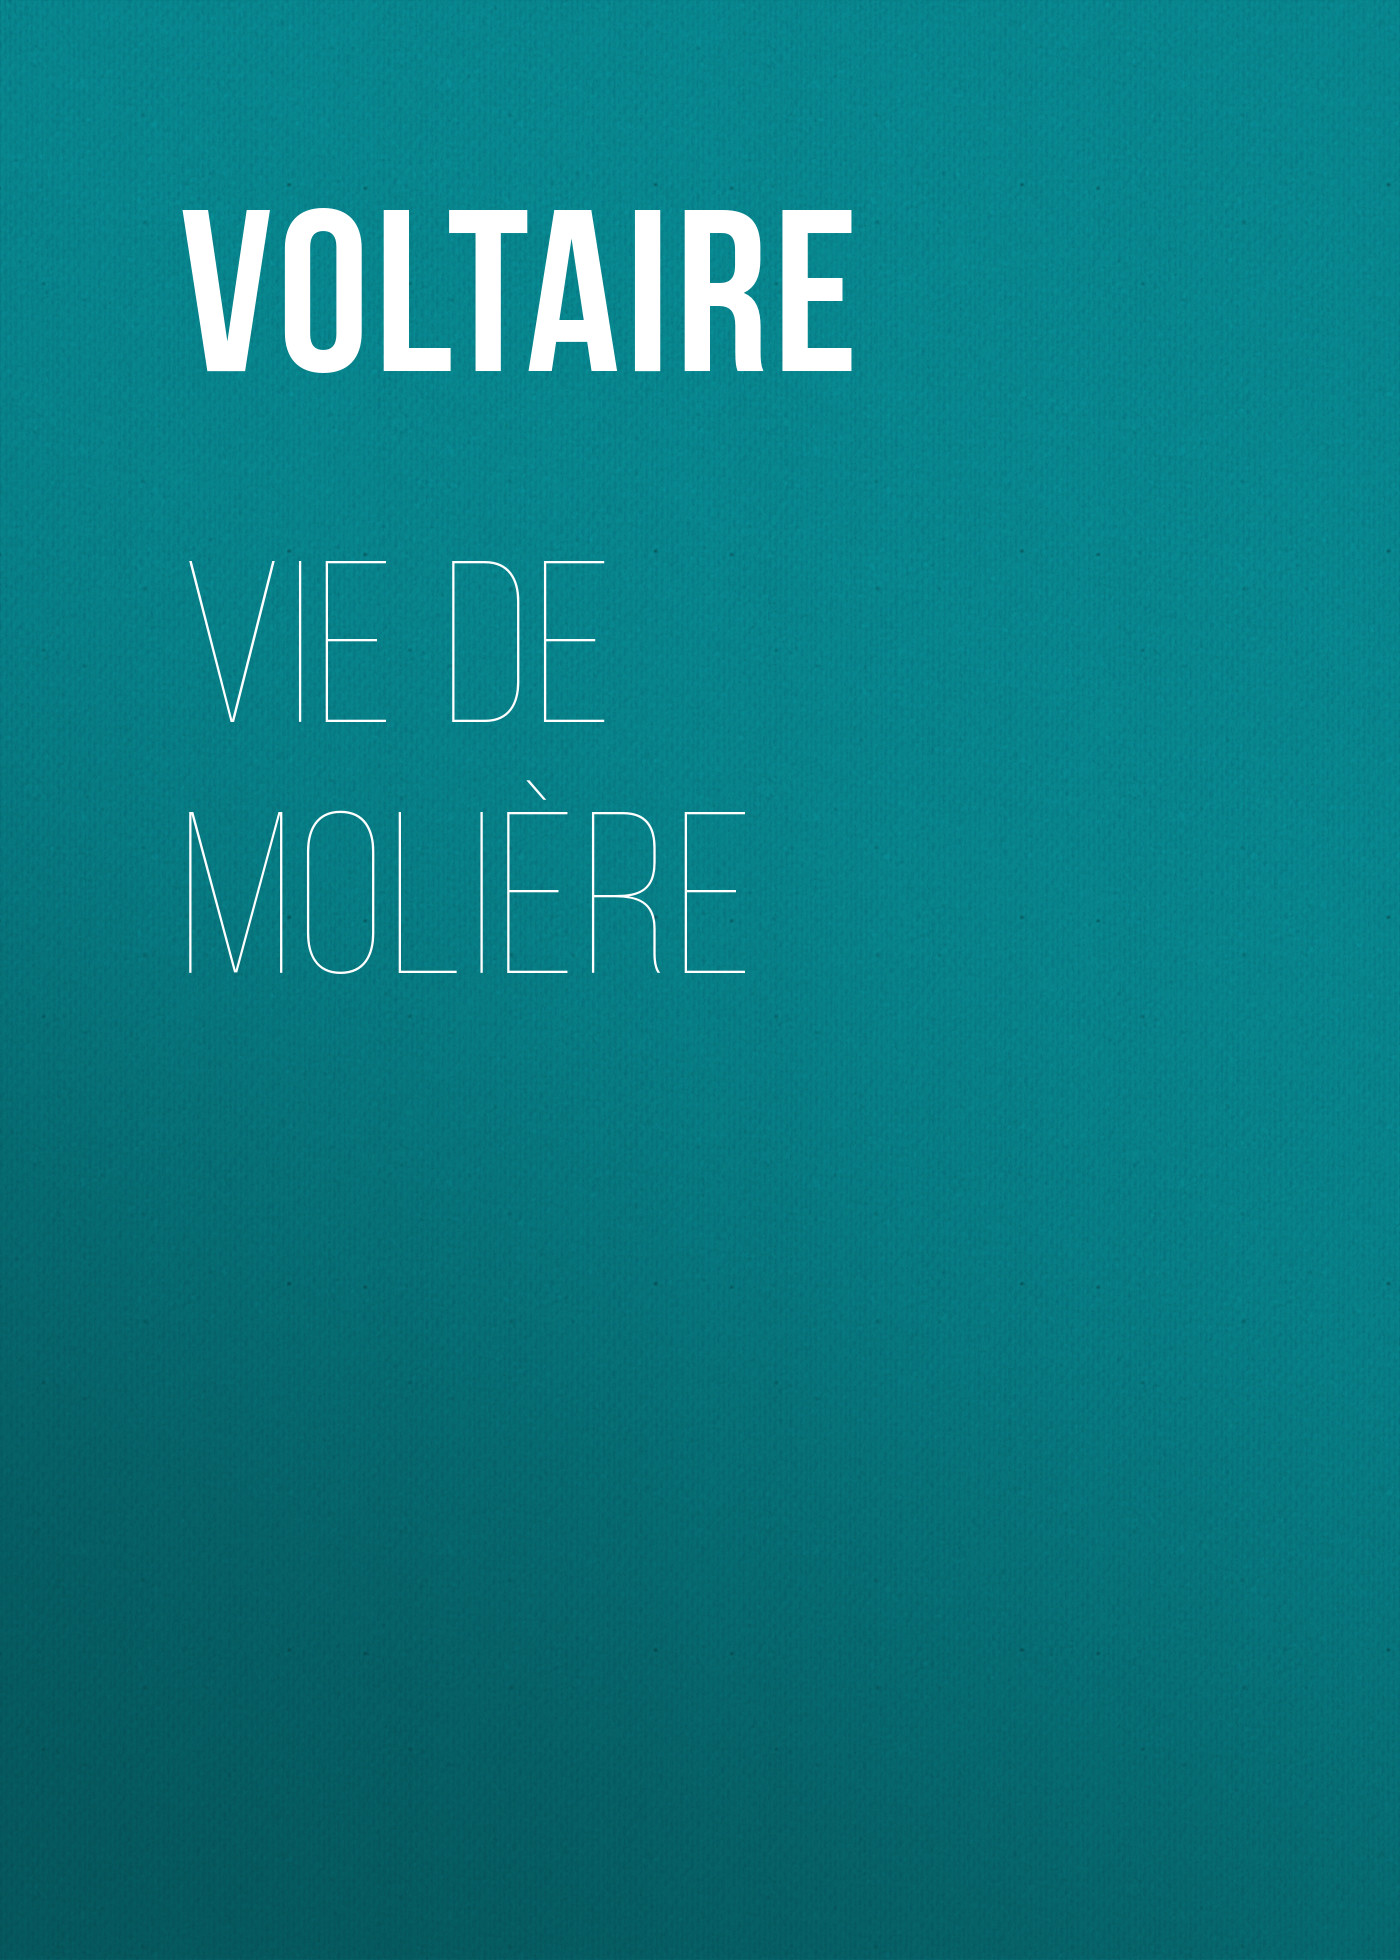 Книга Vie de Molière из серии , созданная  Voltaire, может относится к жанру Литература 18 века, Зарубежная классика. Стоимость электронной книги Vie de Molière с идентификатором 25560308 составляет 0 руб.